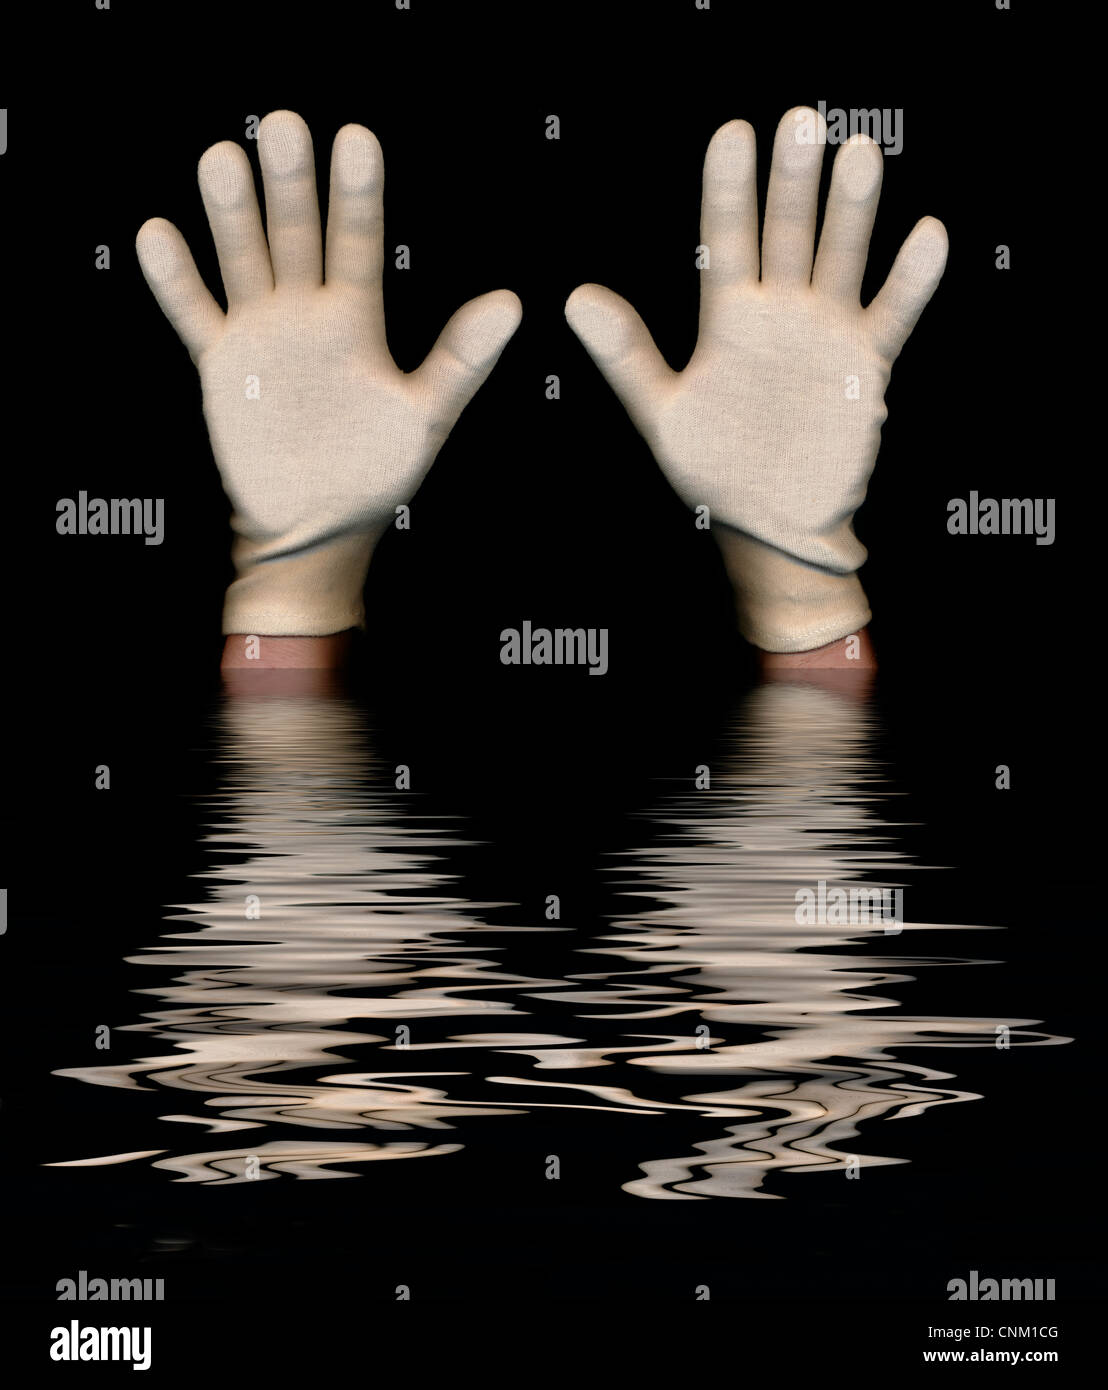 Haut les mains, la noyade dans l'eau photo symbolique Banque D'Images